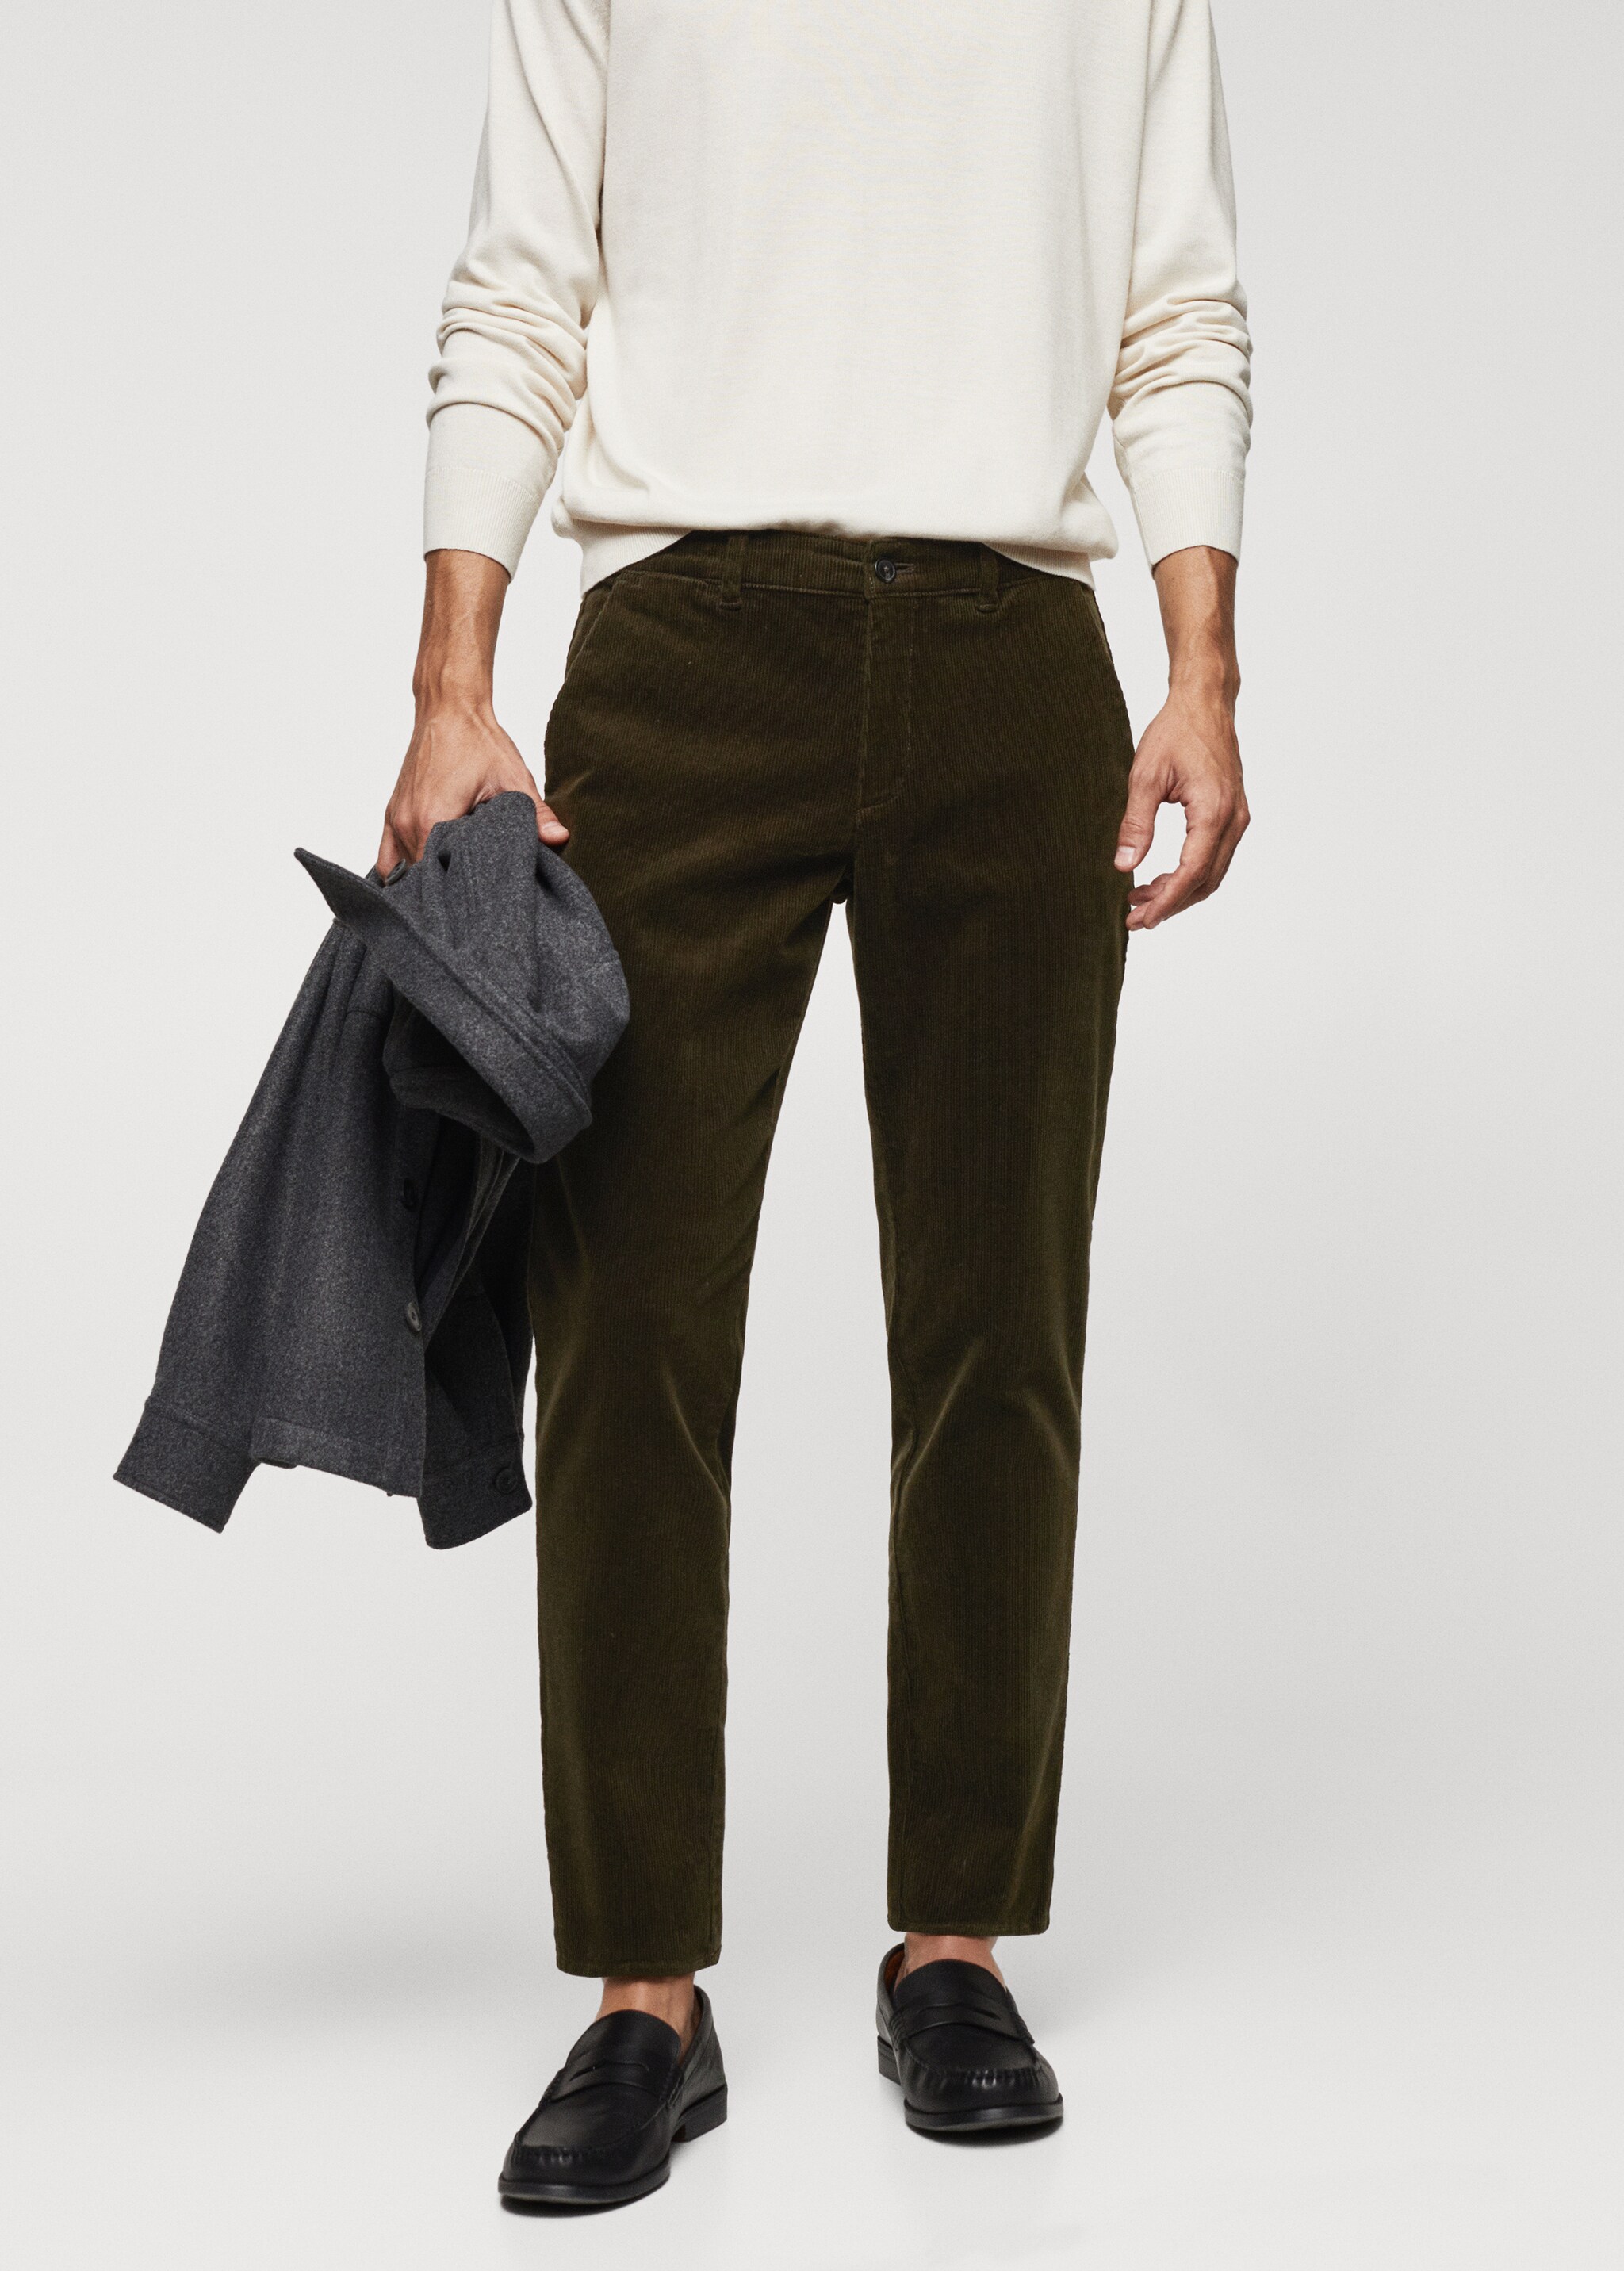 Pantalon velours côtelé slim-fit cordon - Plan moyen